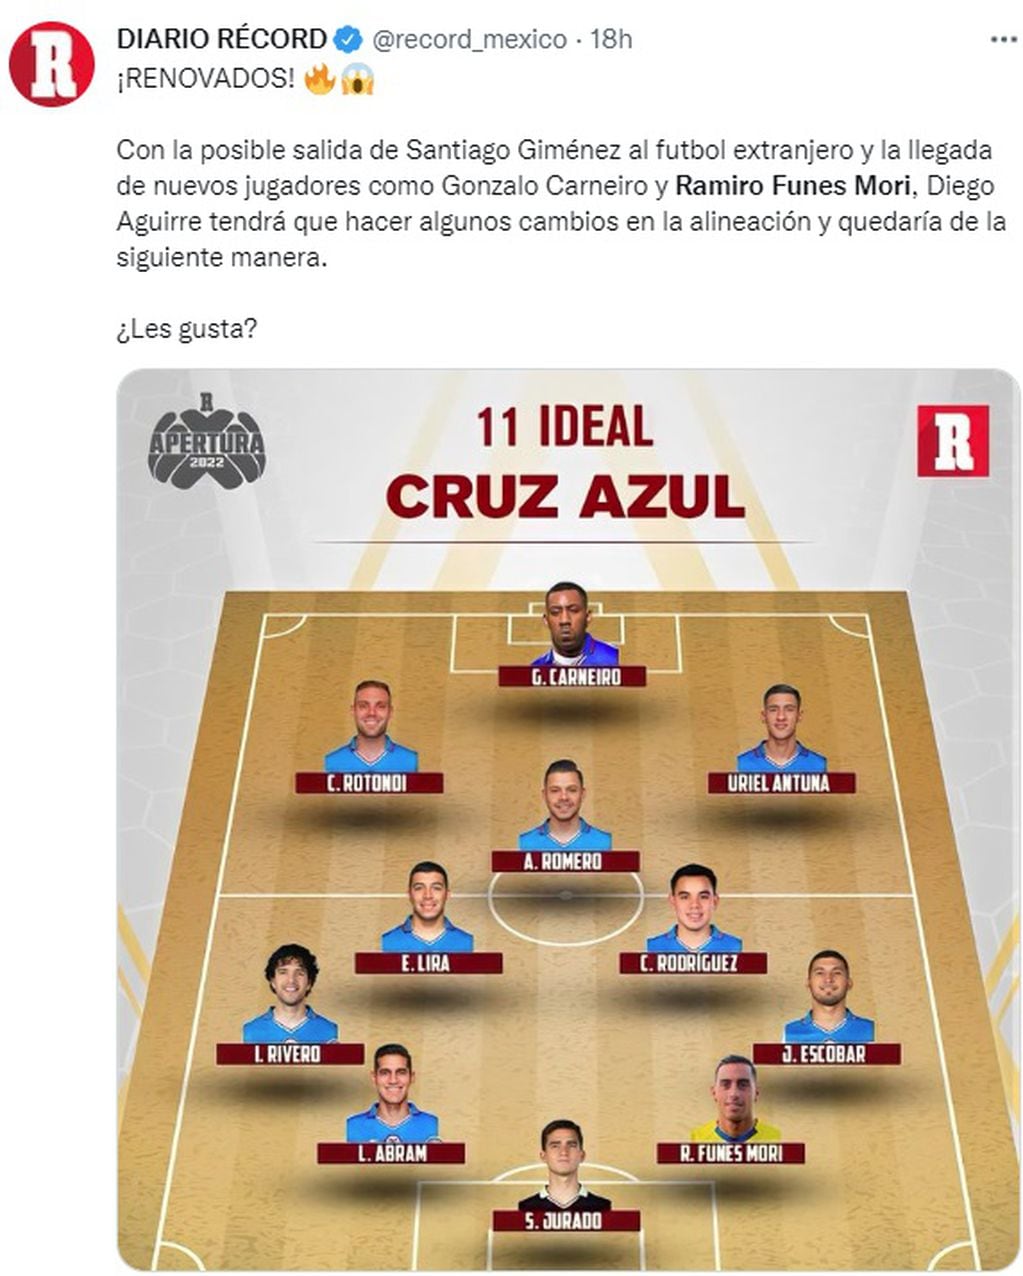 La prensa deportiva de México ya presenta el once ideal de Cruz Azul.